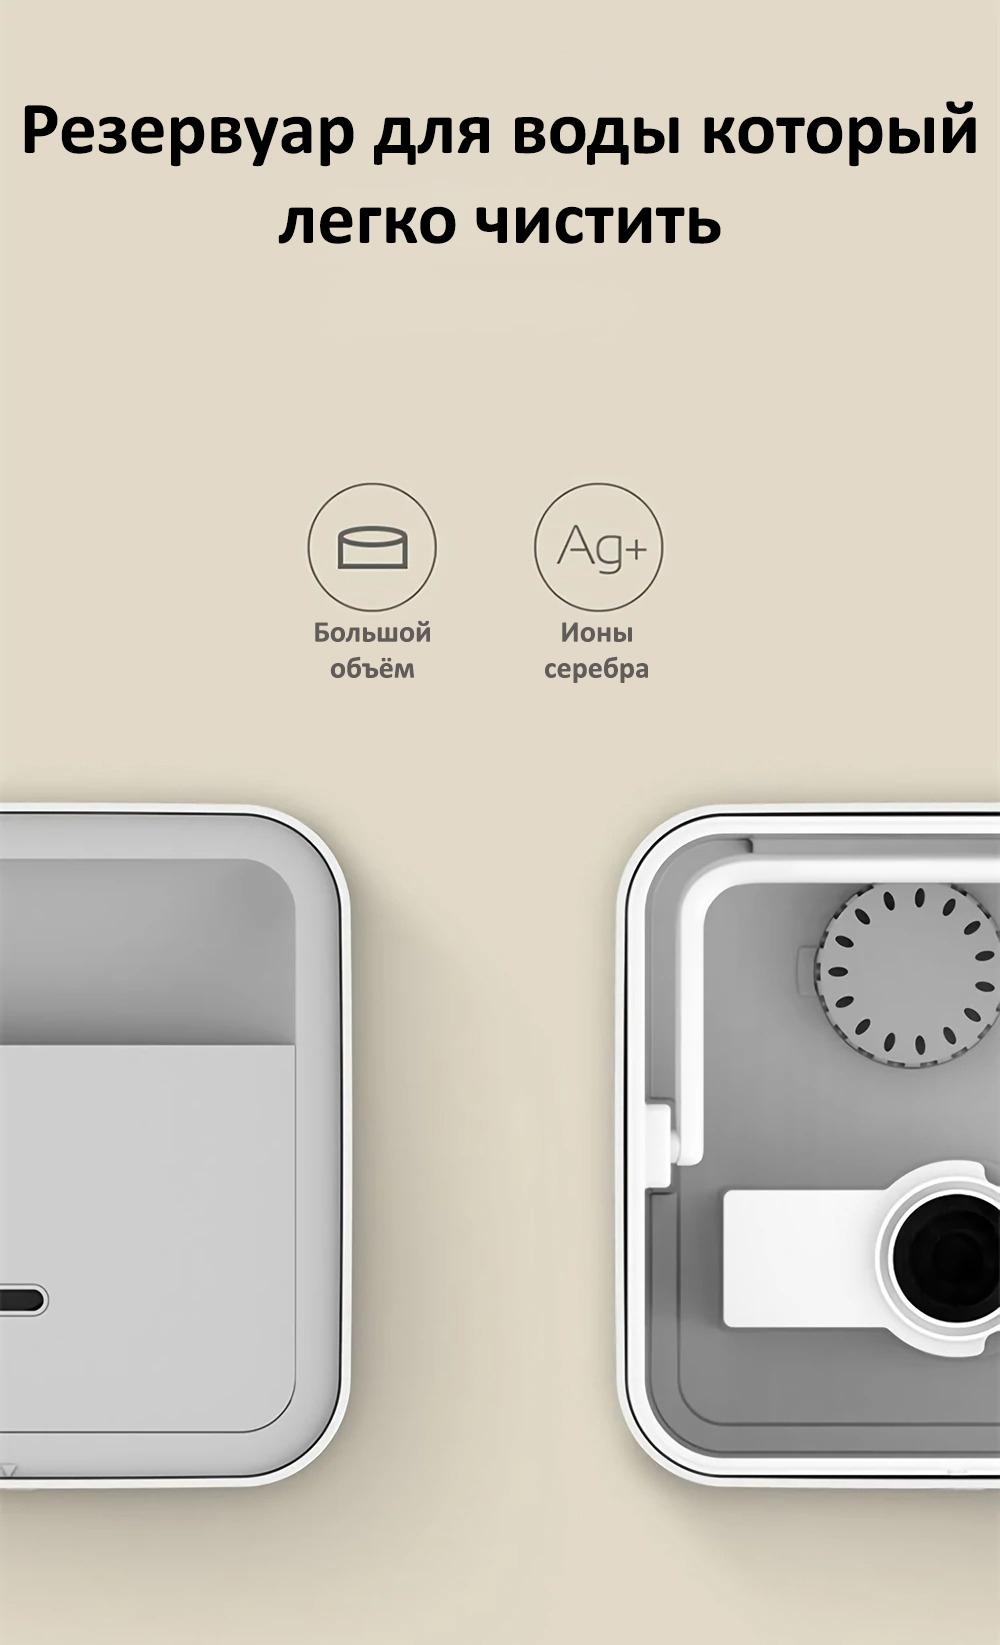 Увлажнитель воздуха Xiaomi Deerma Intelligent Humidifier (DEM-ST800)